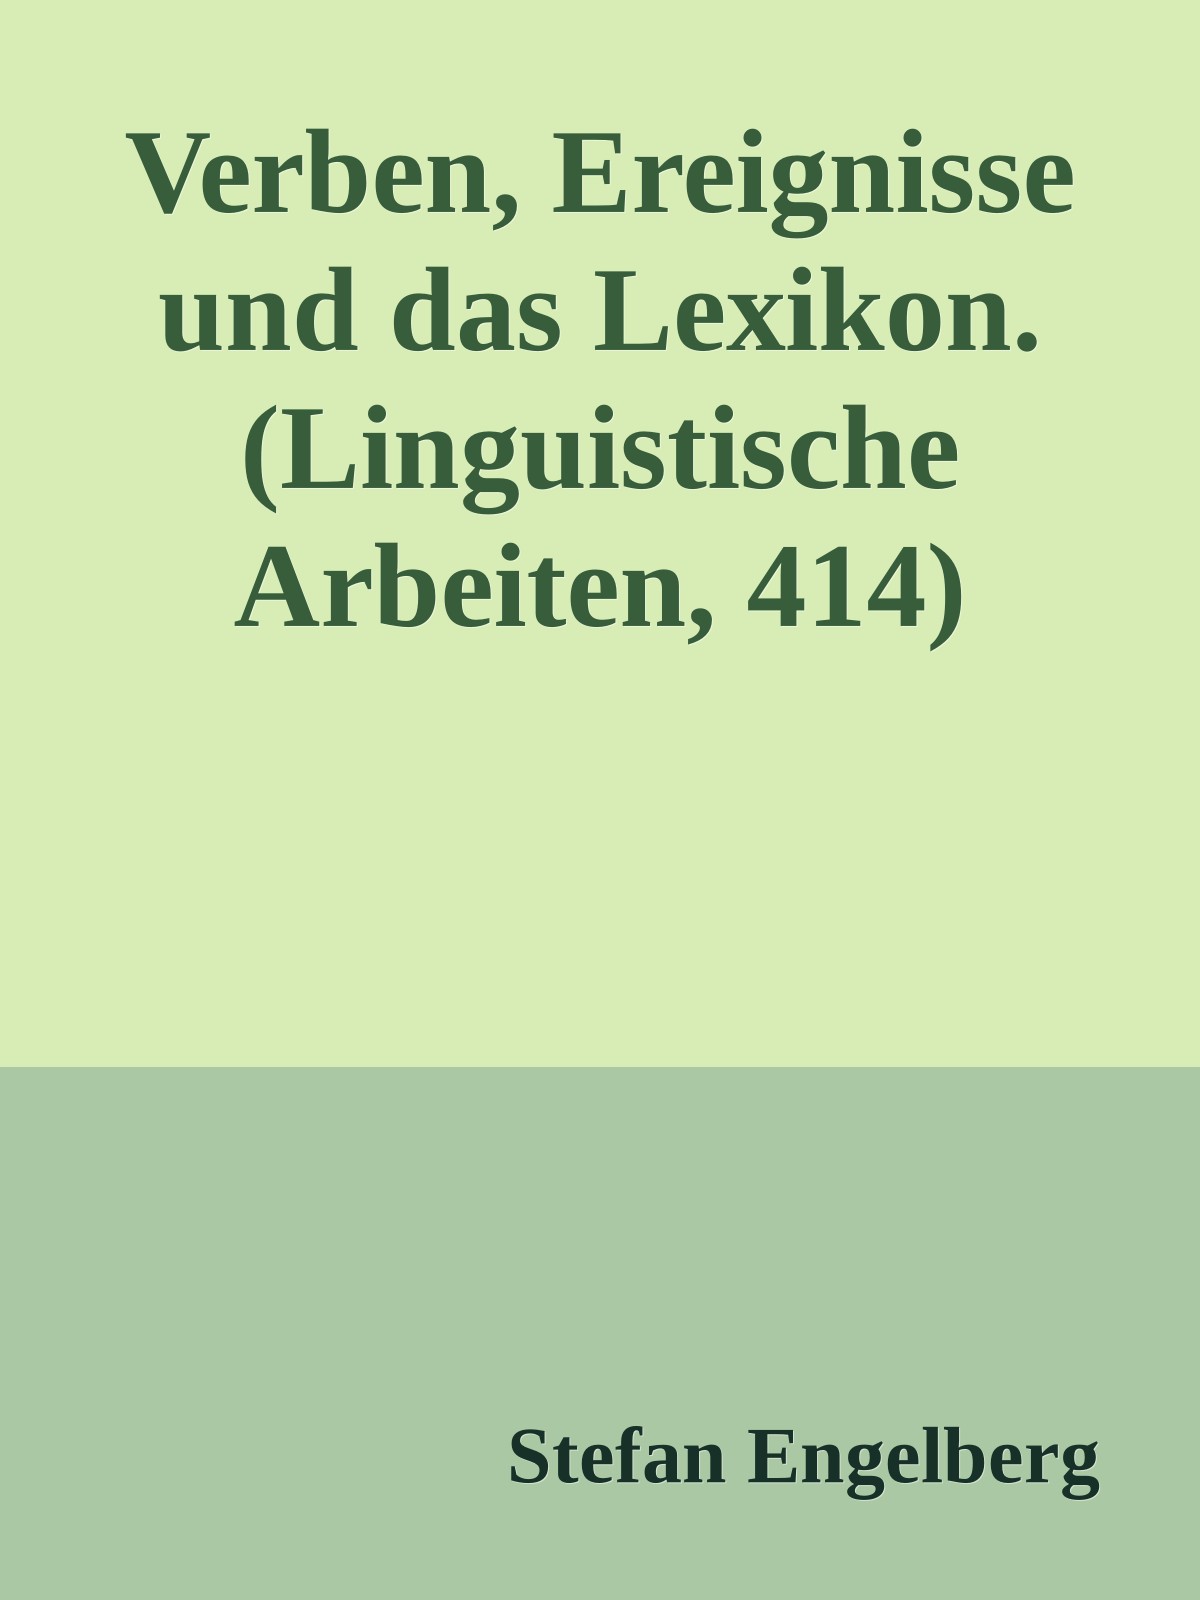 Verben, Ereignisse und das Lexikon. (Linguistische Arbeiten, 414)